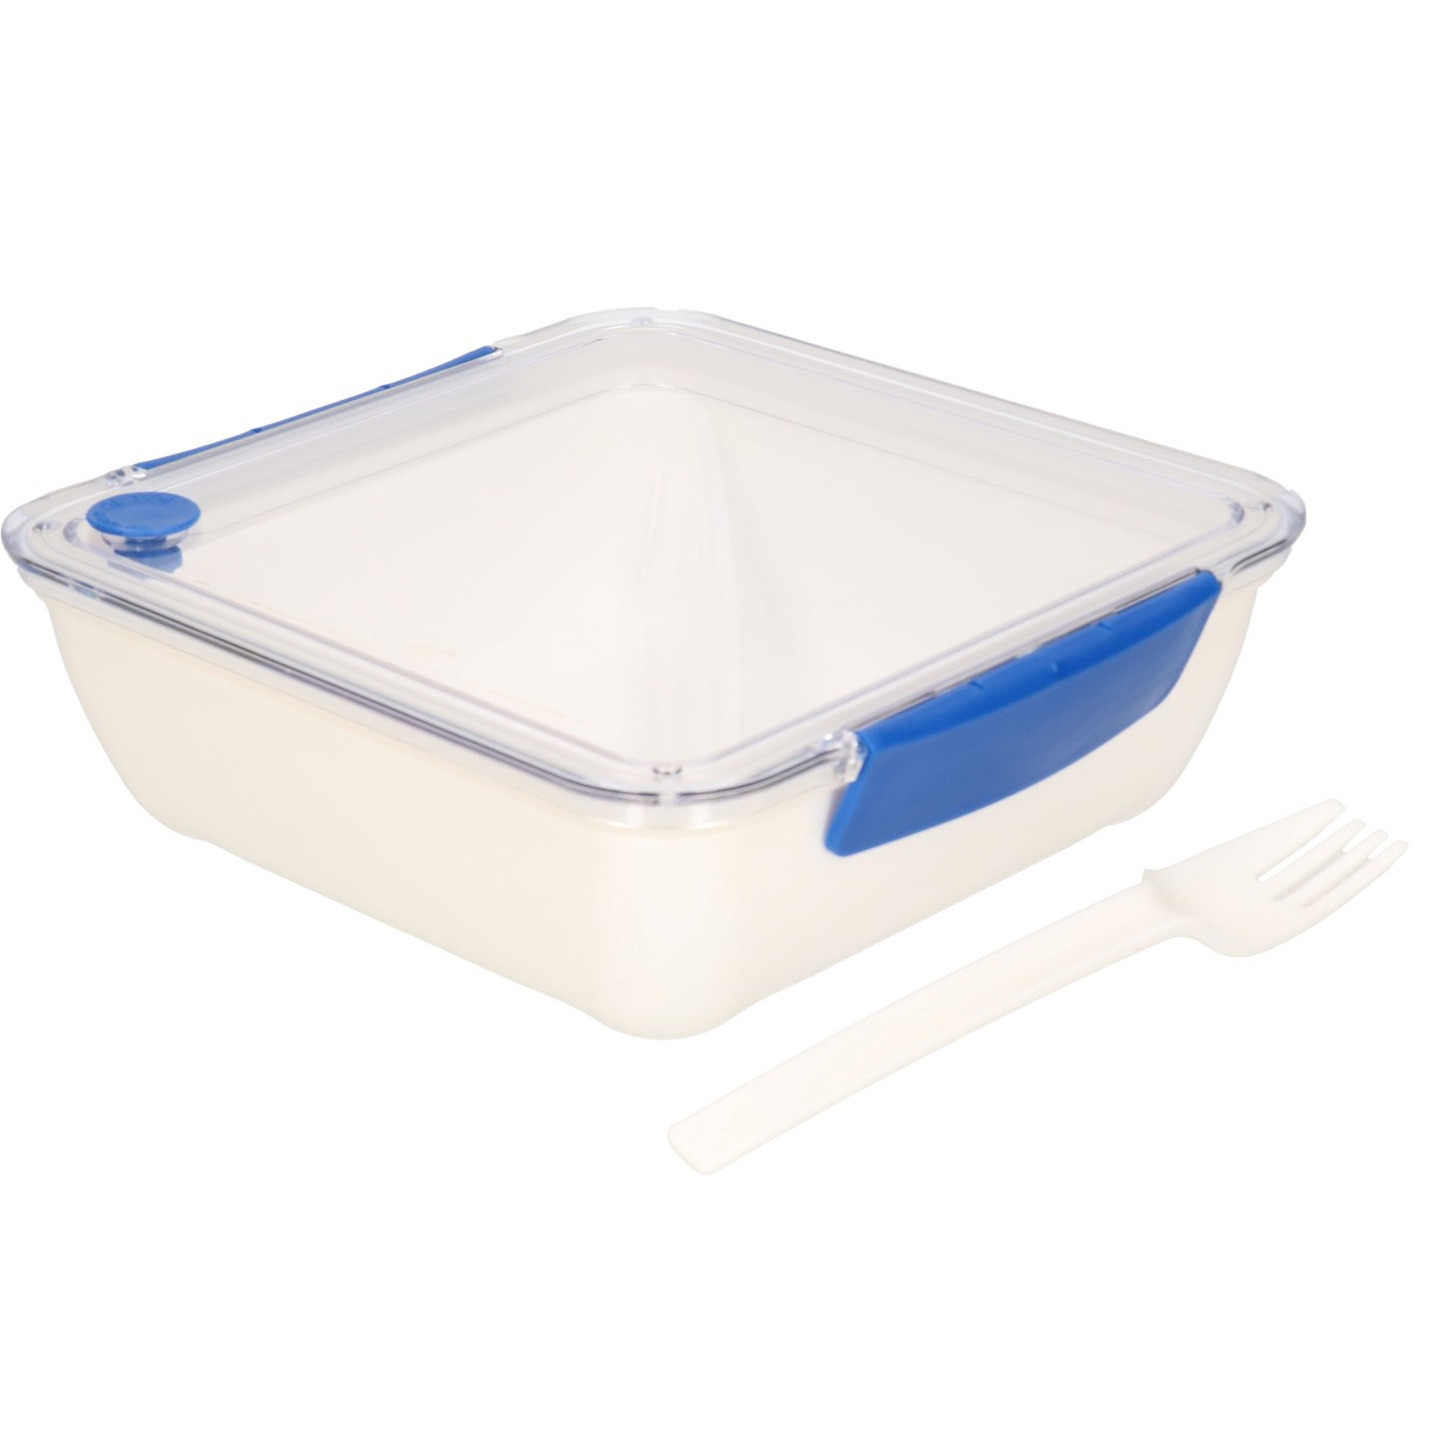 Transparant met blauwe lunchbox met vorkje 1000 ml